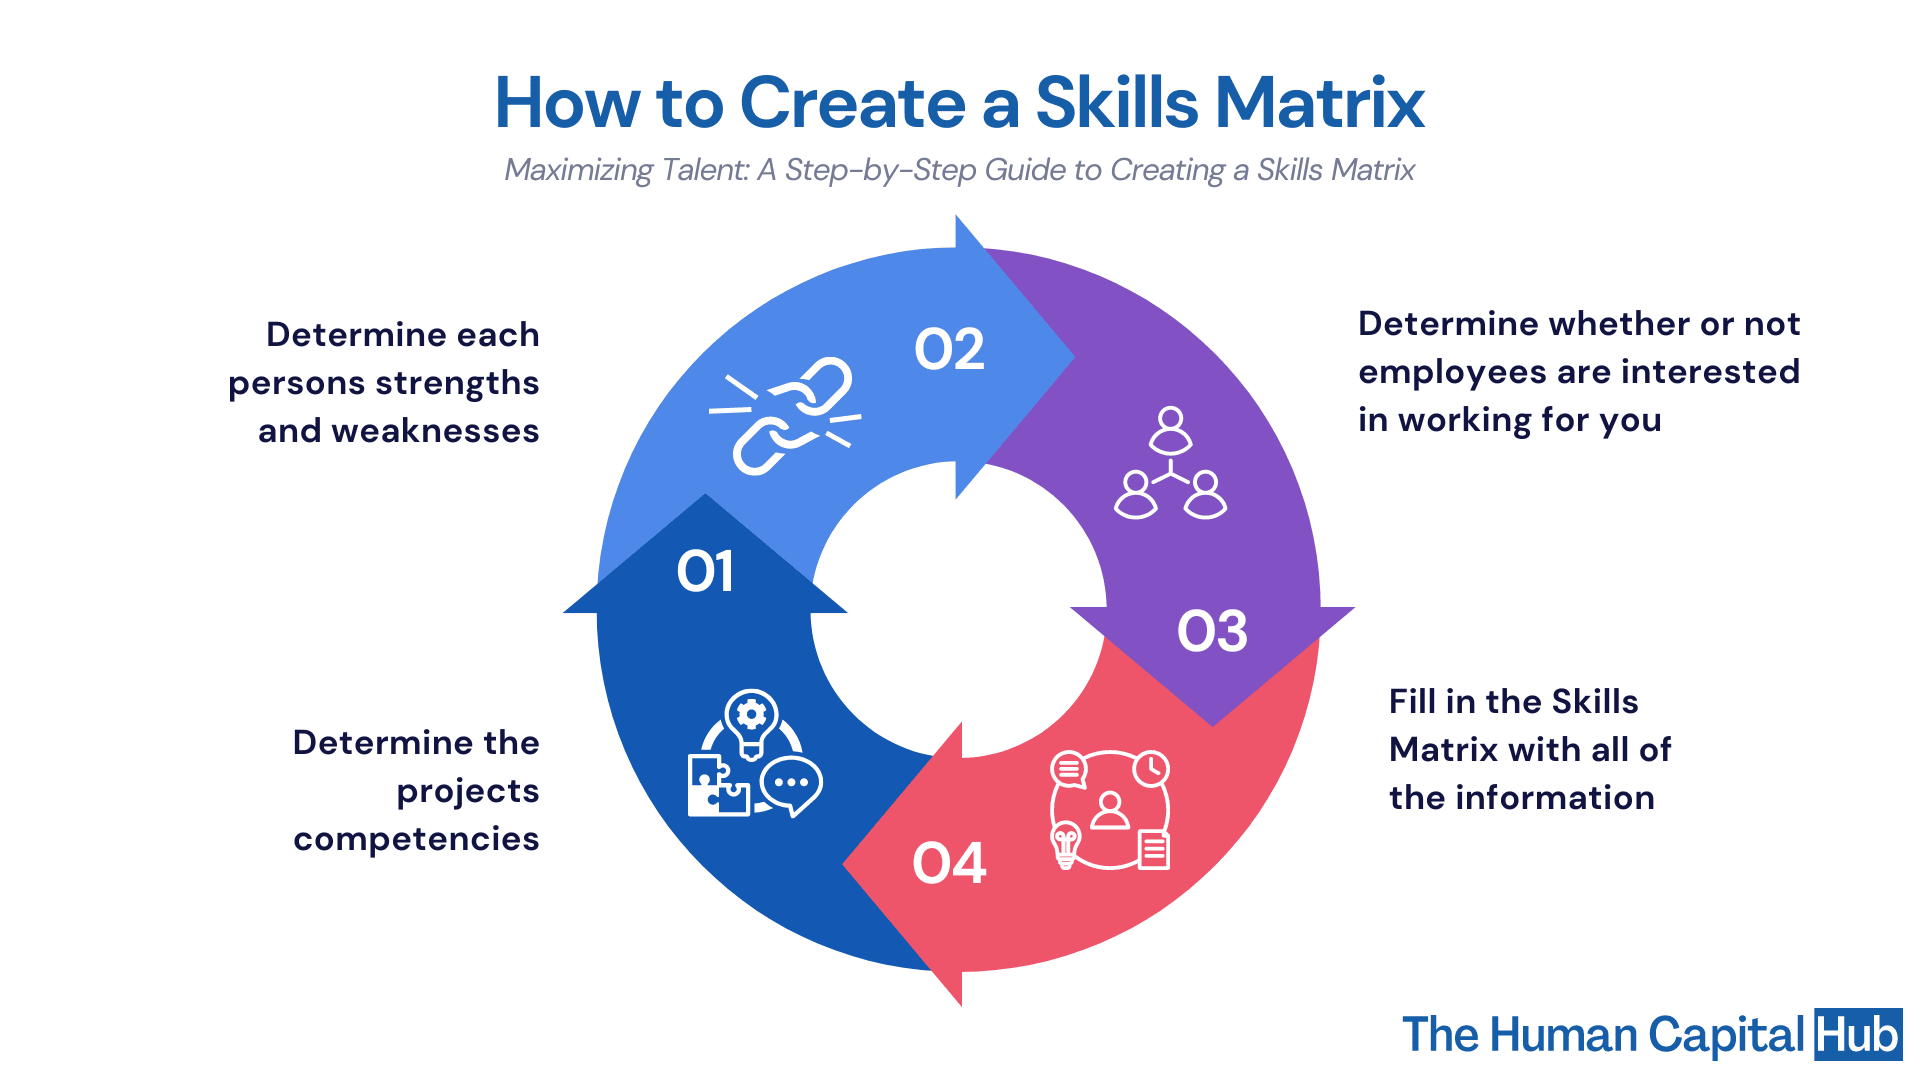 Skills Matrix: How to create a skills matrix